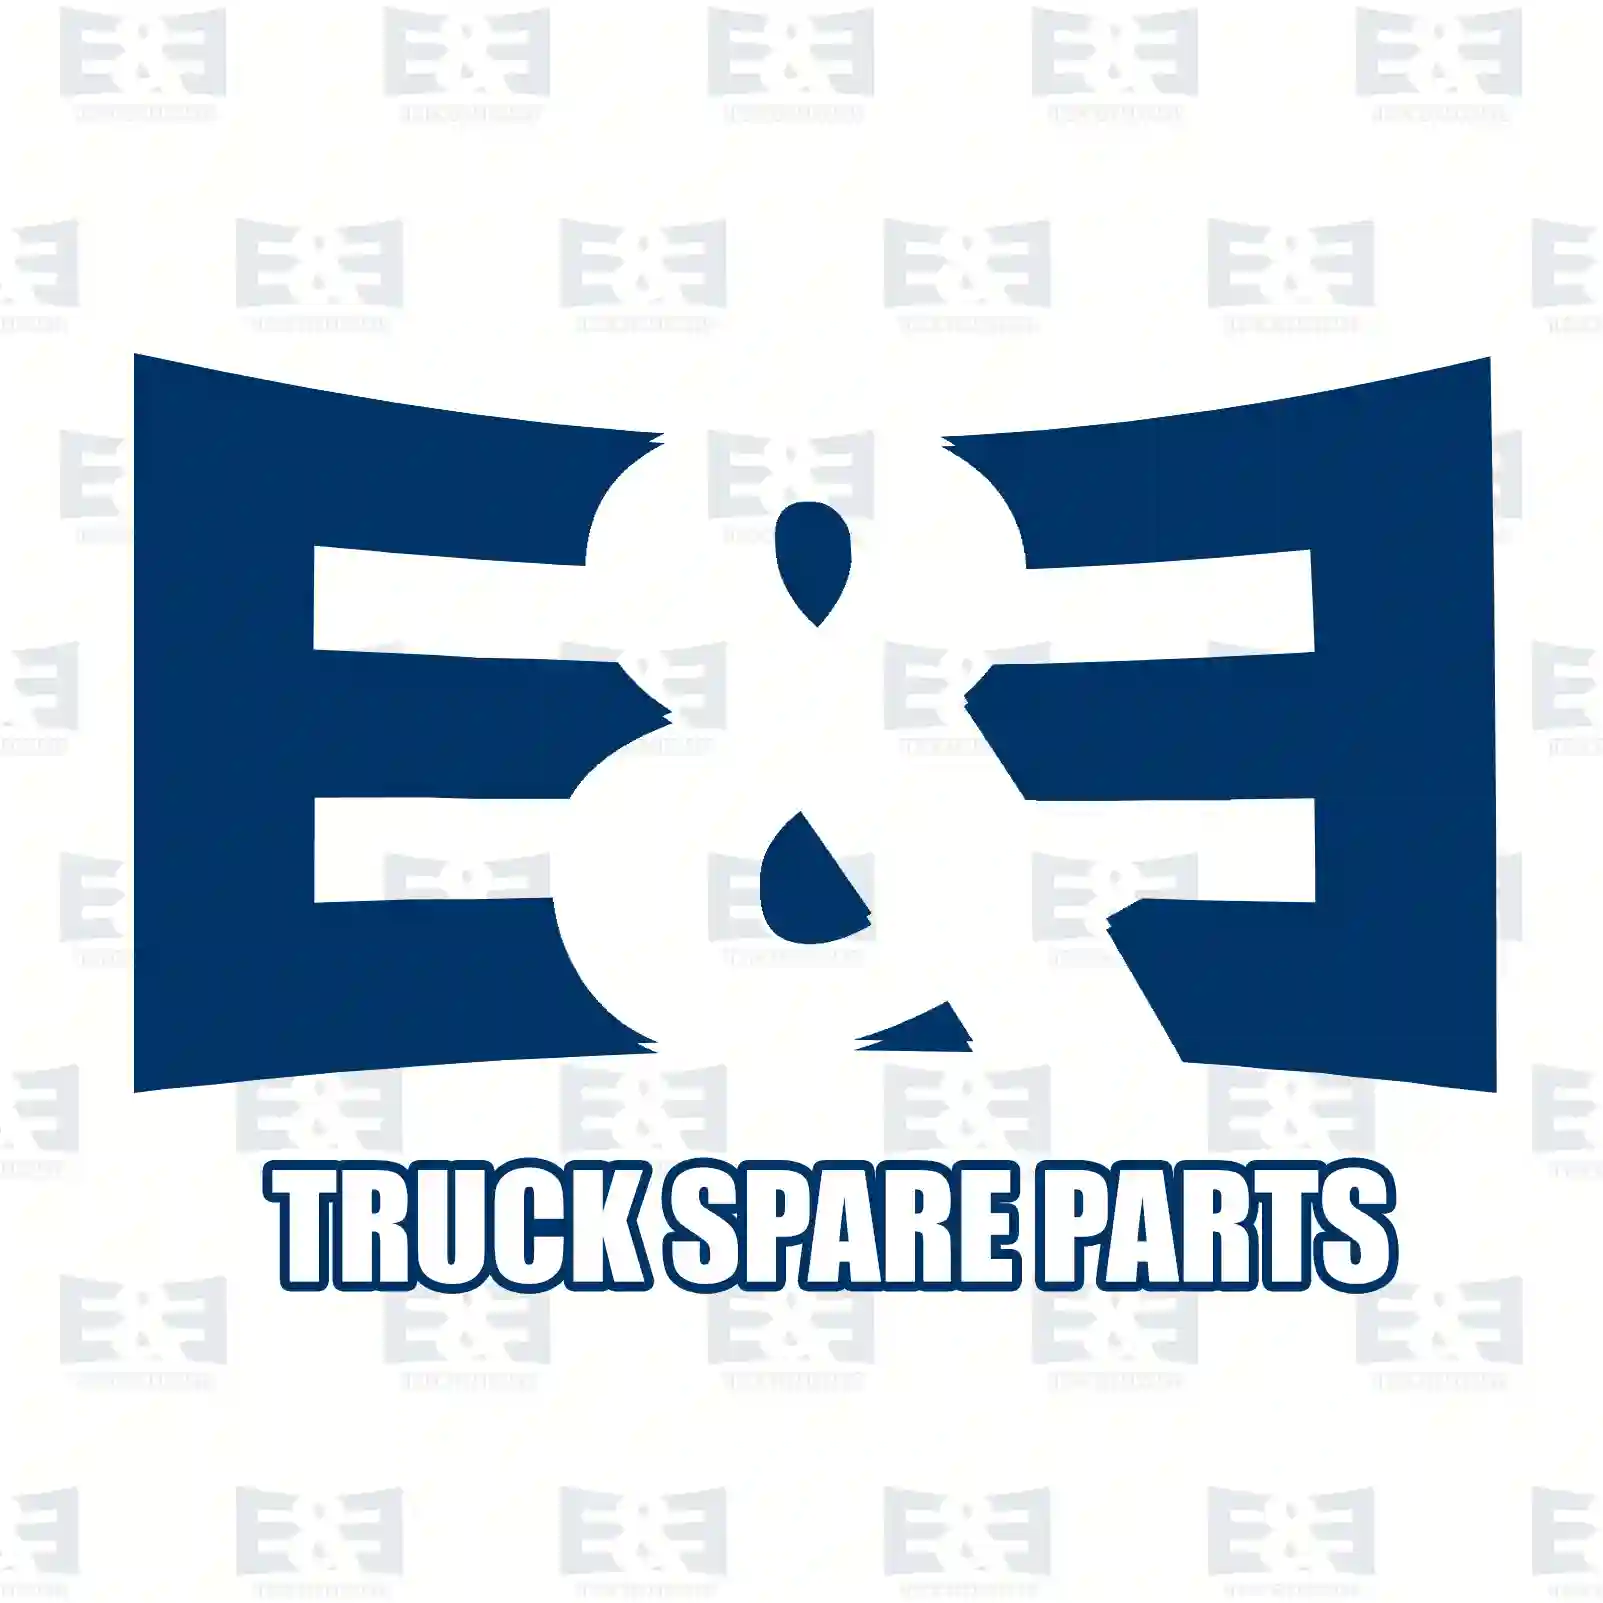 Rocker arm, 2E2209627, 51042010149, 51042011002, 51042016072, 51042016073, 51042016077, 51042016078, 51042016102, 51042016111, 4030500733, 4220500333, 4420500333, ZG01949-0008 ||  2E2209627 E&E Truck Spare Parts | Truck Spare Parts, Auotomotive Spare Parts Rocker arm, 2E2209627, 51042010149, 51042011002, 51042016072, 51042016073, 51042016077, 51042016078, 51042016102, 51042016111, 4030500733, 4220500333, 4420500333, ZG01949-0008 ||  2E2209627 E&E Truck Spare Parts | Truck Spare Parts, Auotomotive Spare Parts